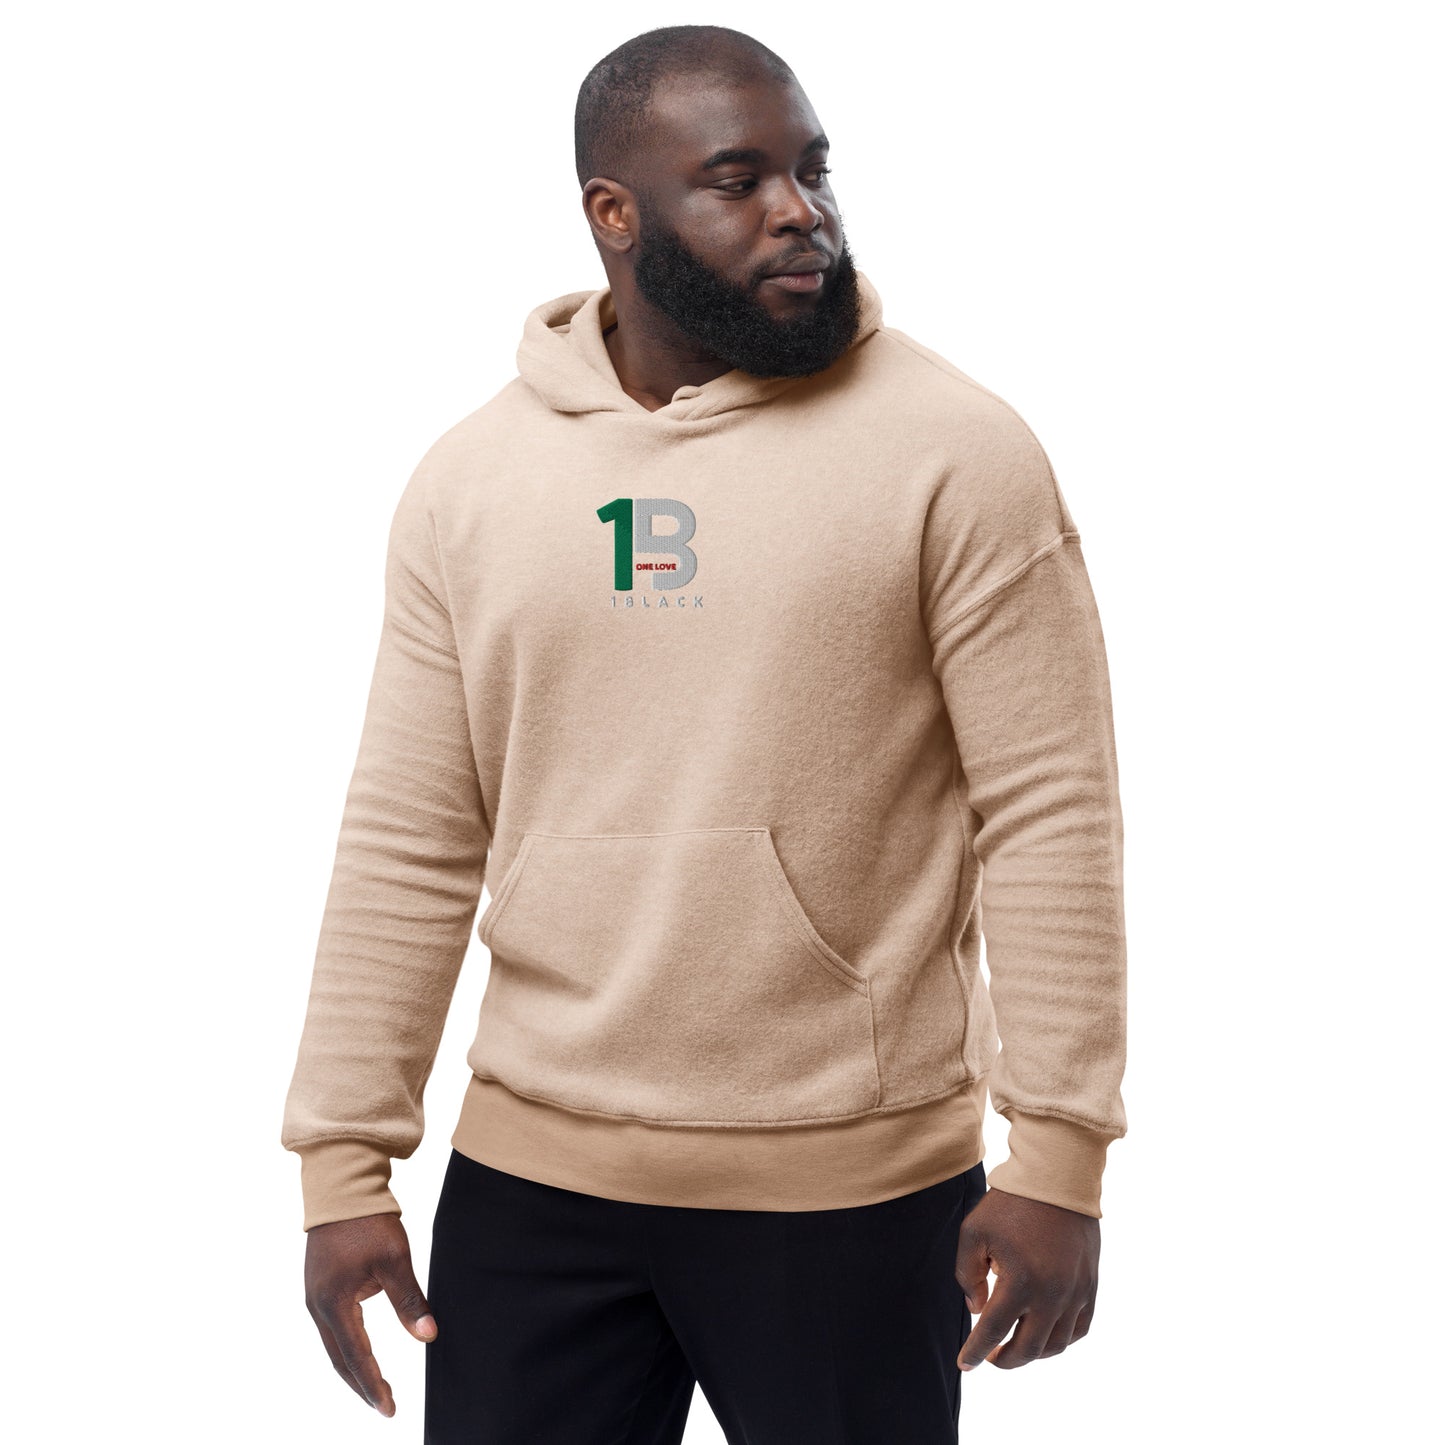 1black Unisex sueded fleece hoodie – 1Black Brand